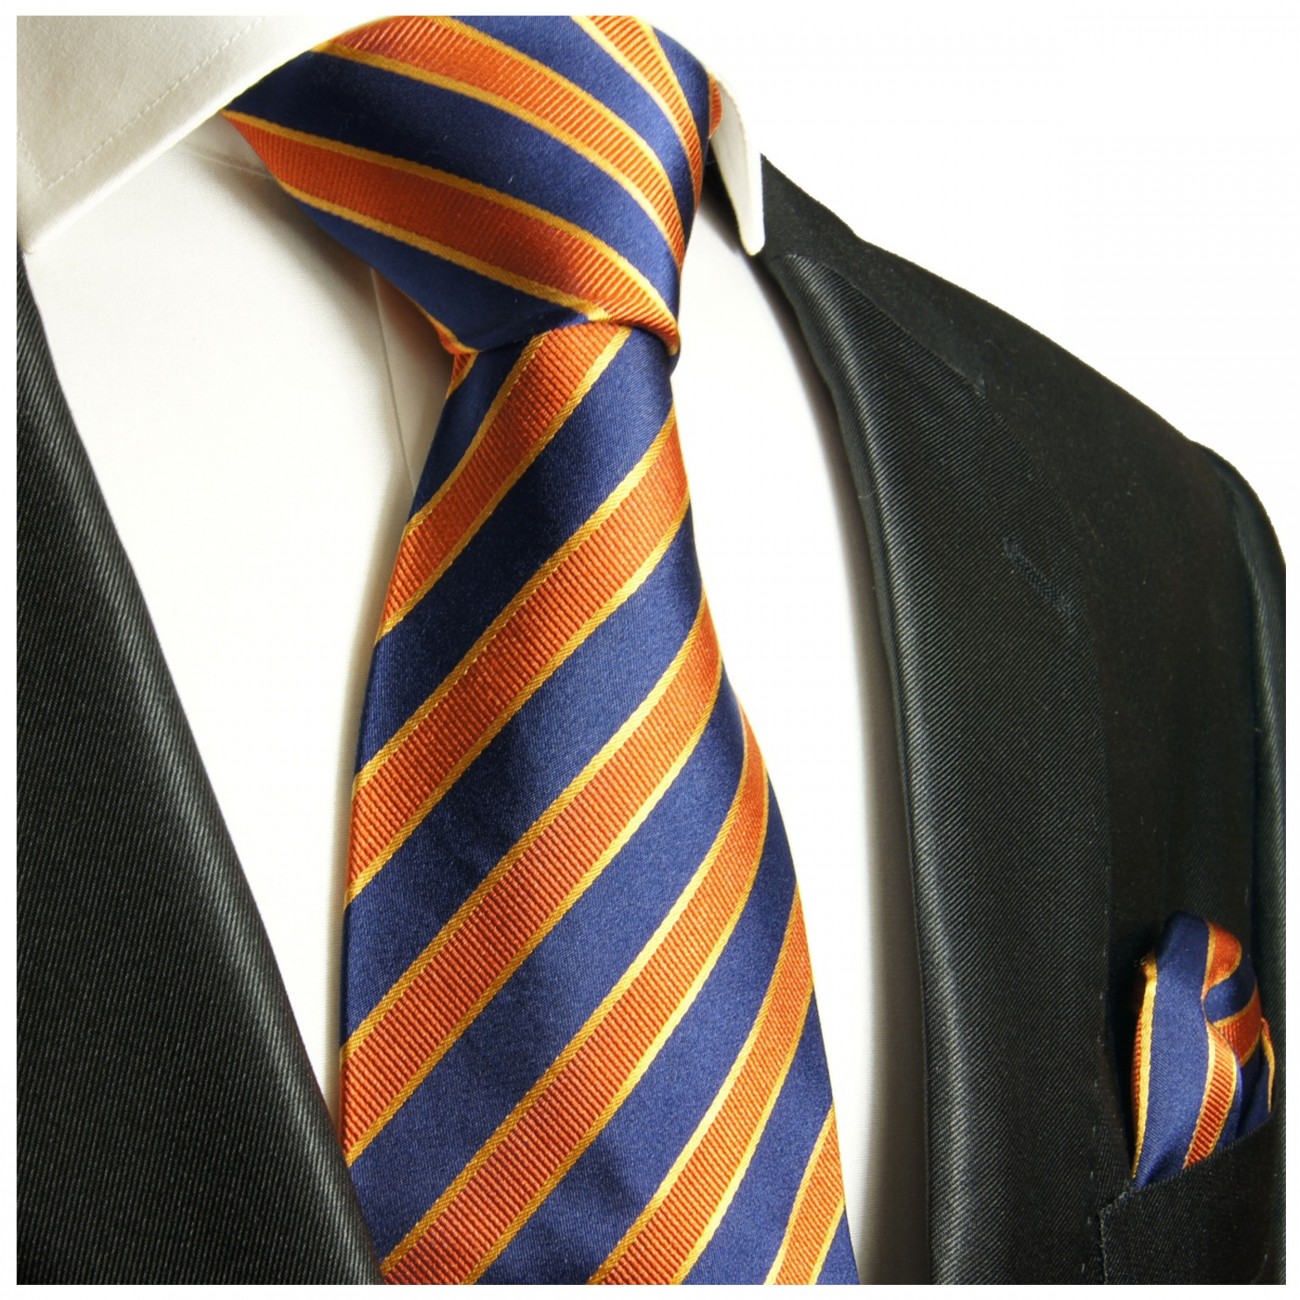 Krawatte blau orange gestreift mit Einstecktuch 728